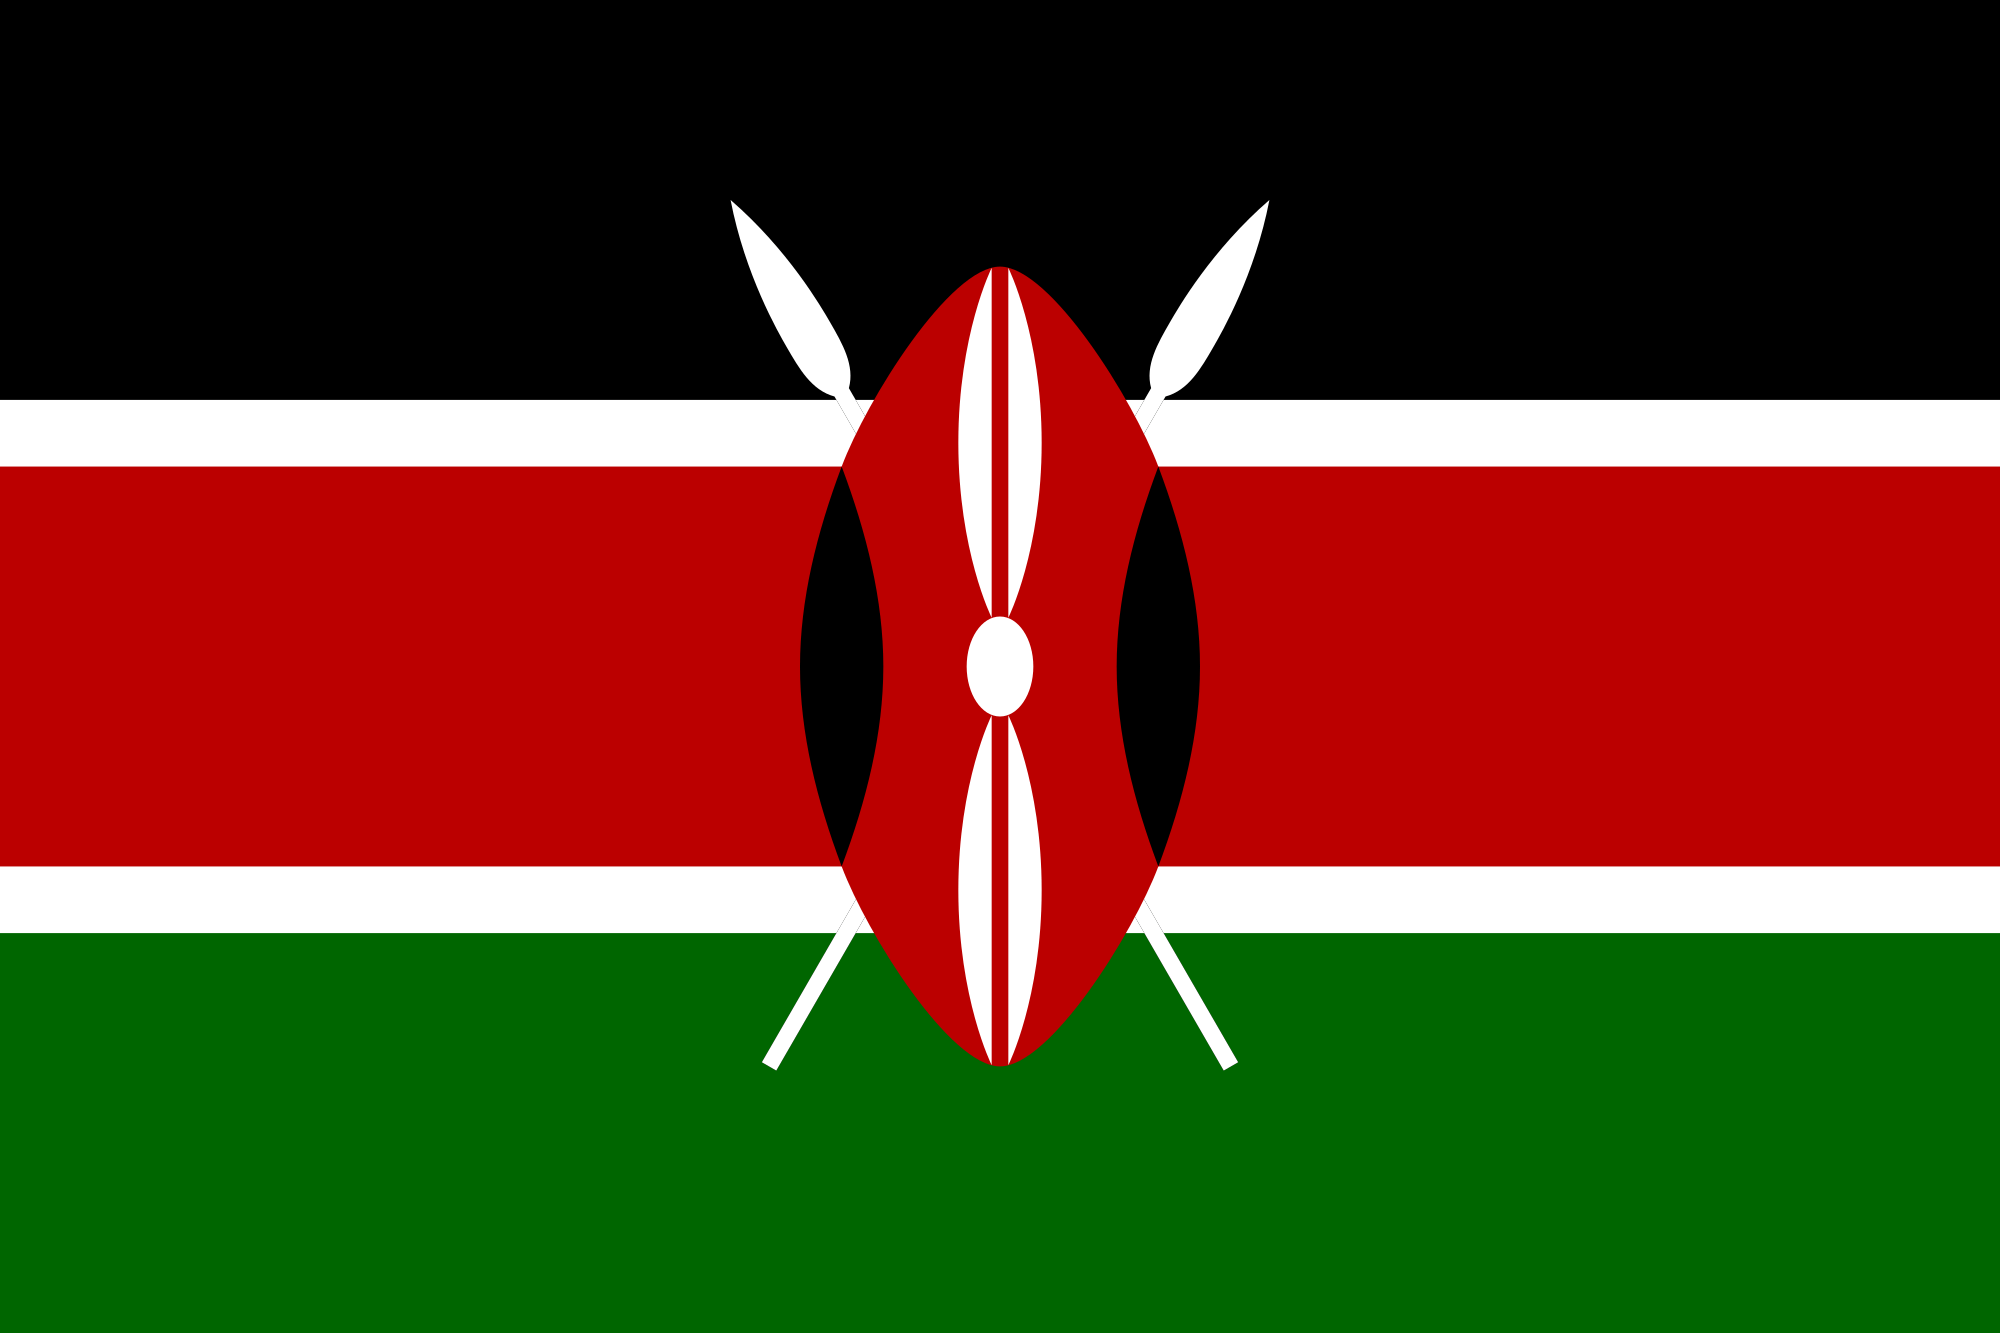 Red Green Flag Logo - Kenya Flag - Symbolism of Colors, Flag Etiquette, Design and History